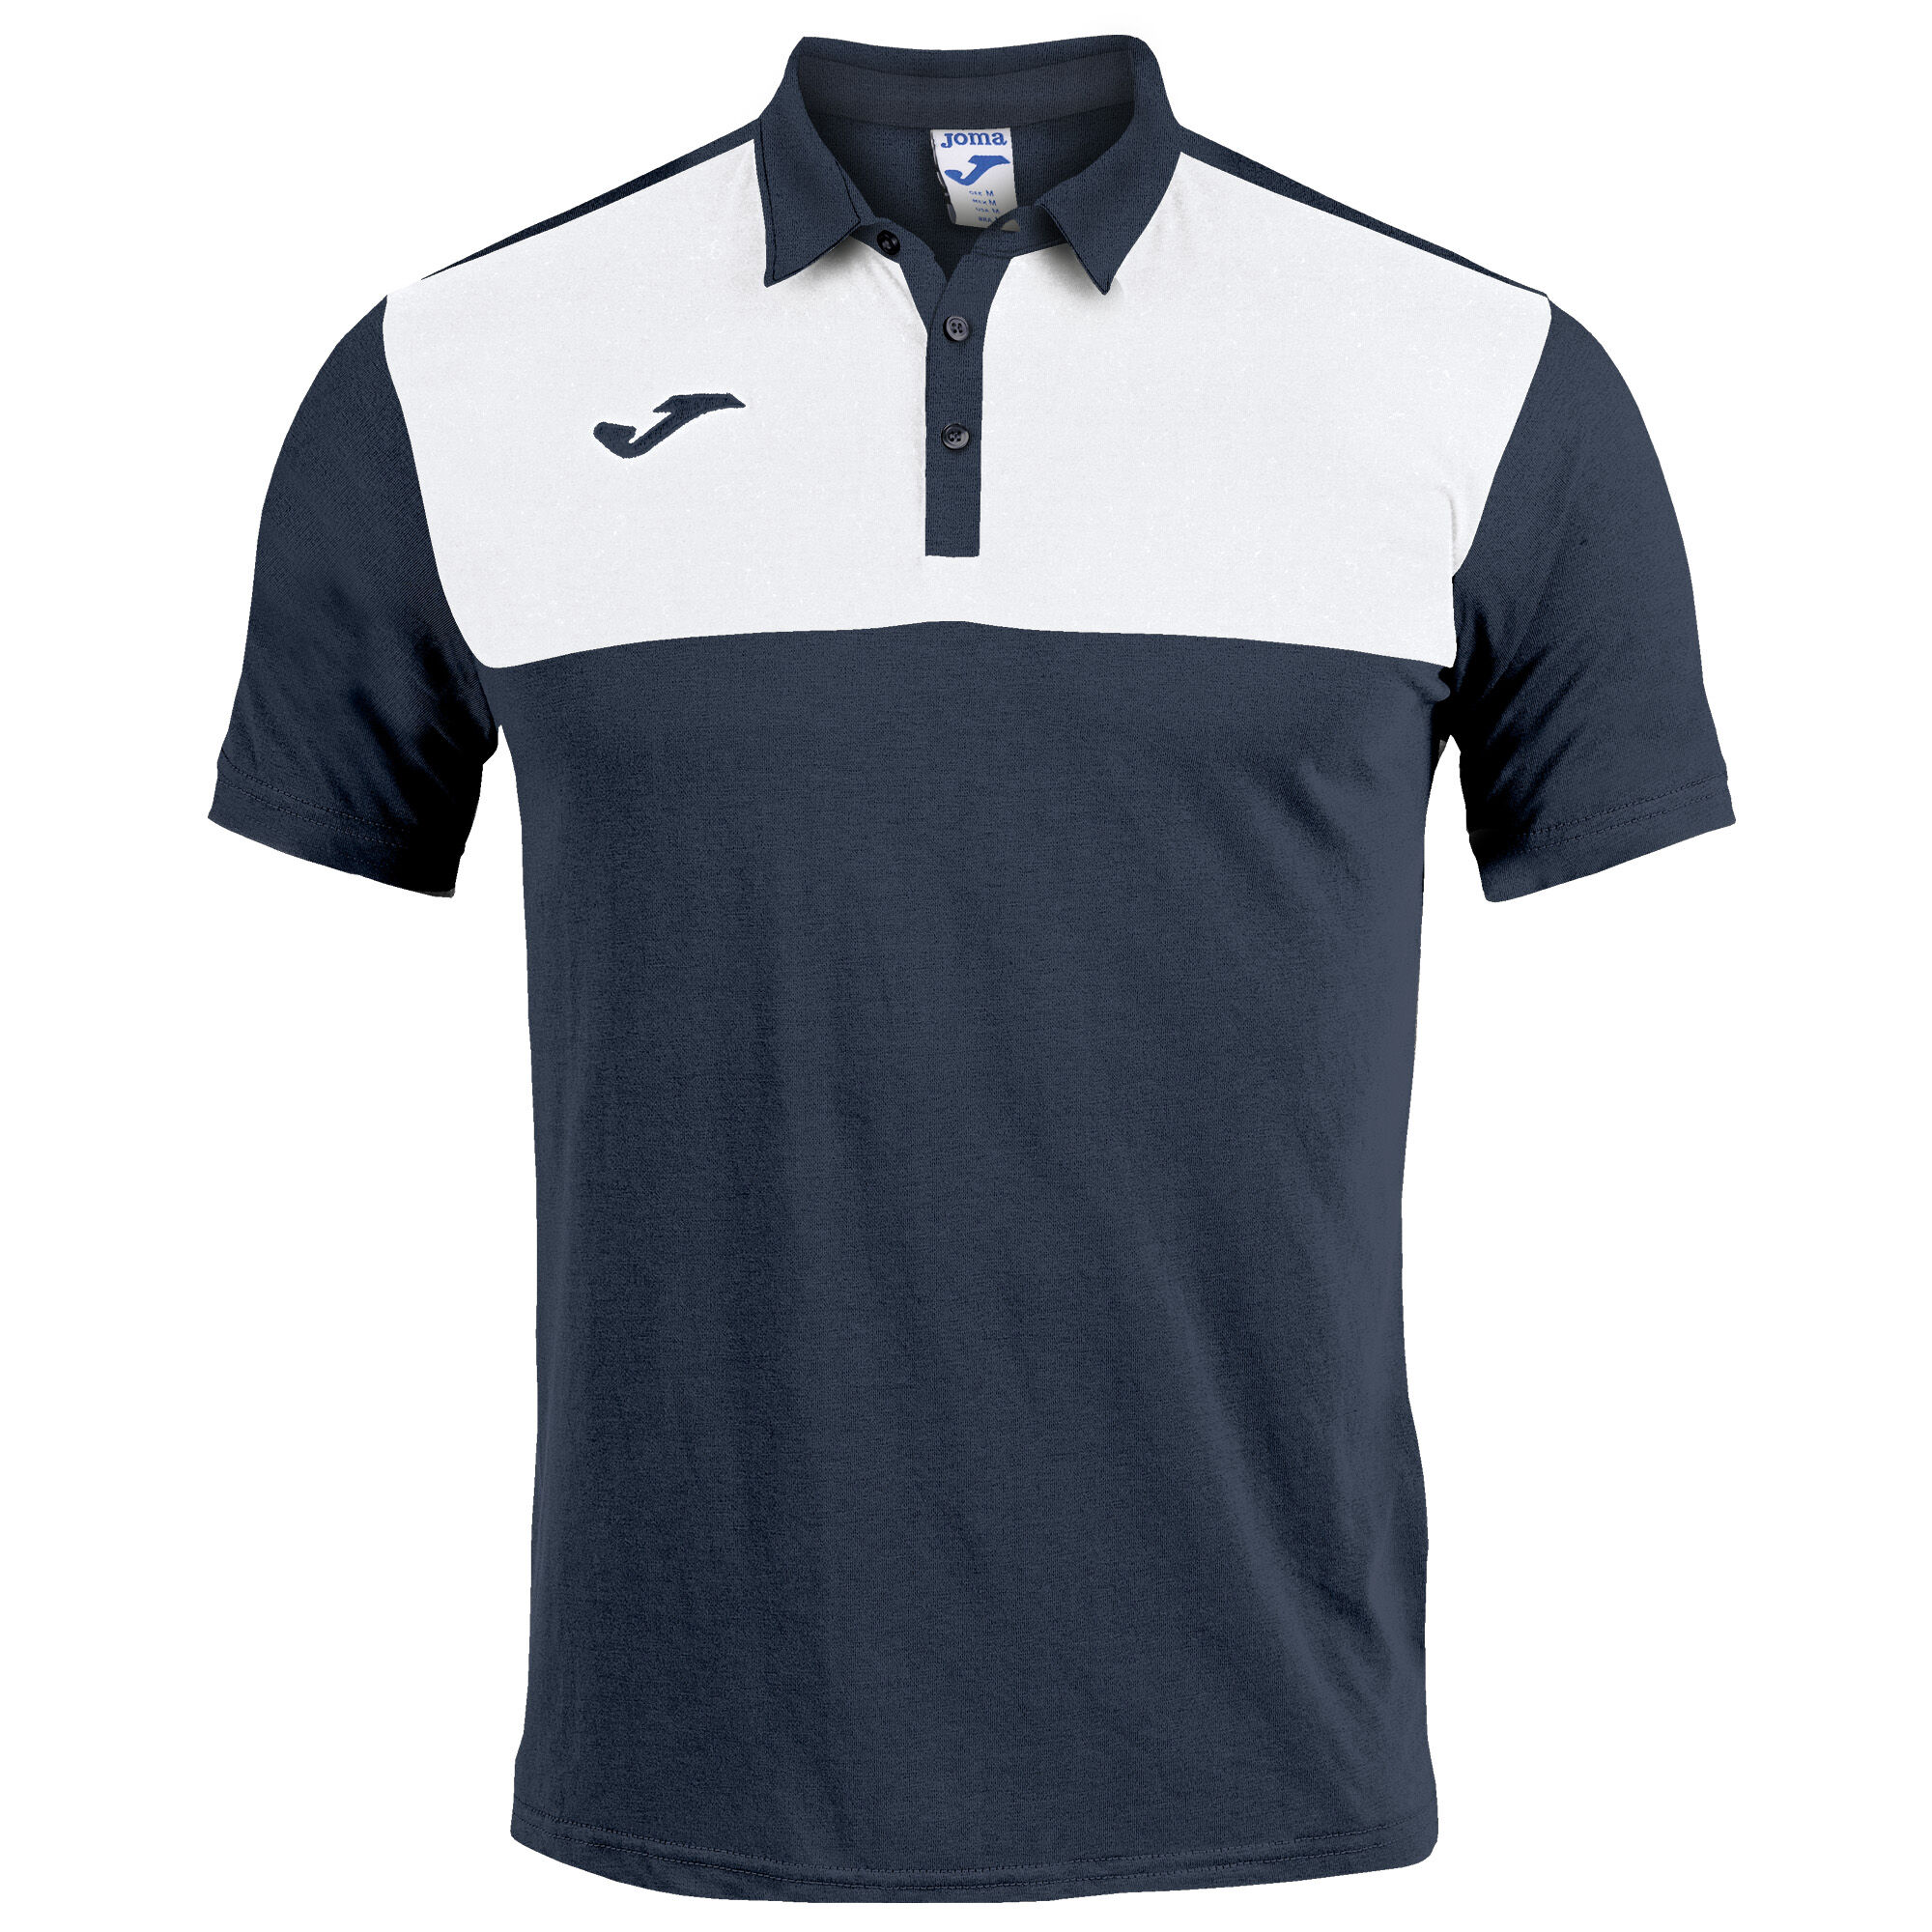 Polo shirt short-sleeve man Winner navy blue white